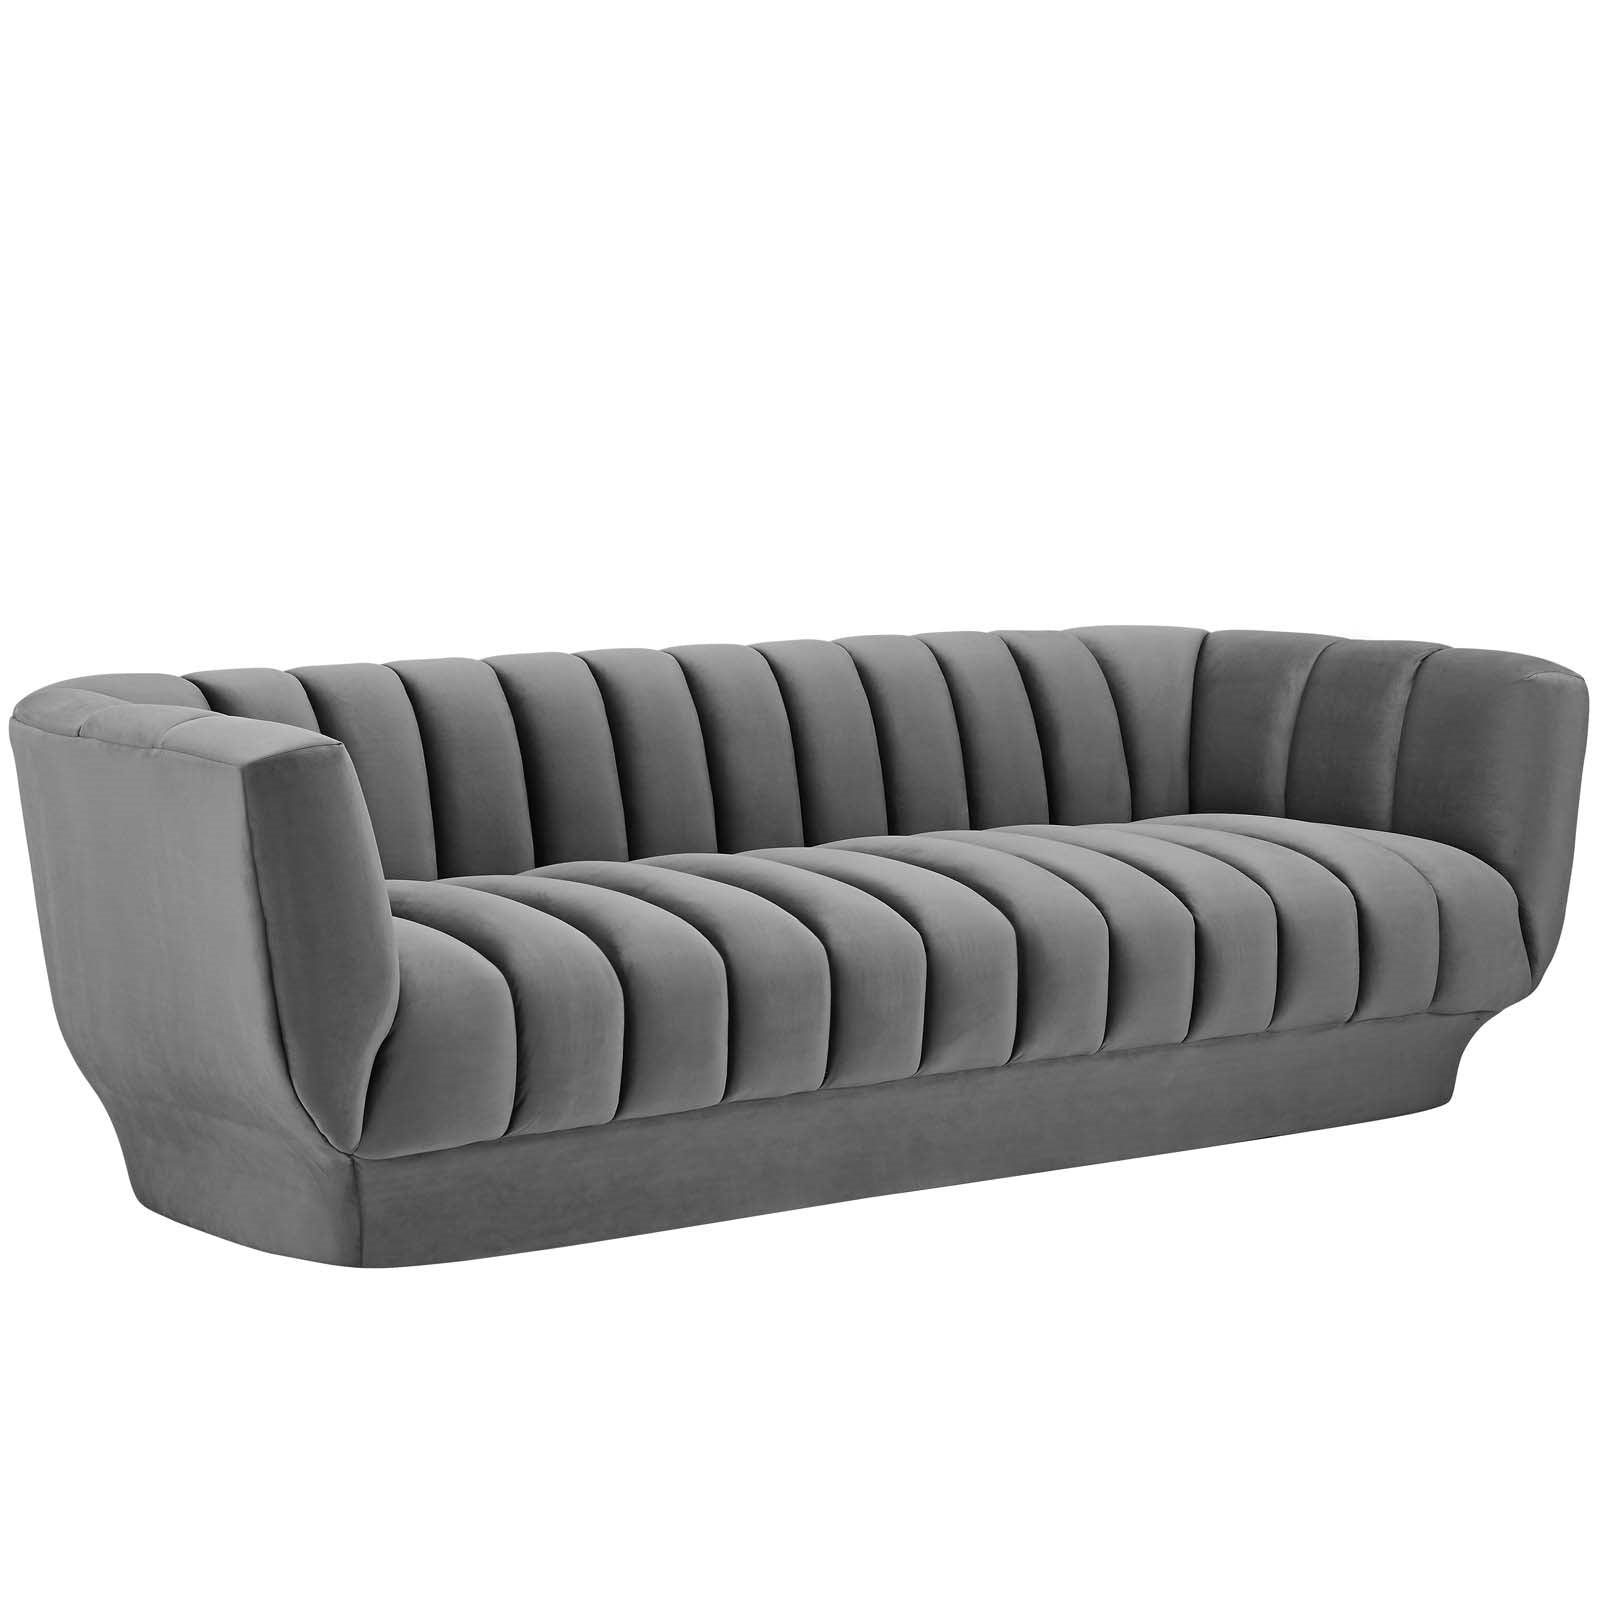 Lyla Tufted Velvet Sofa in Gray - Euro Living Furniture